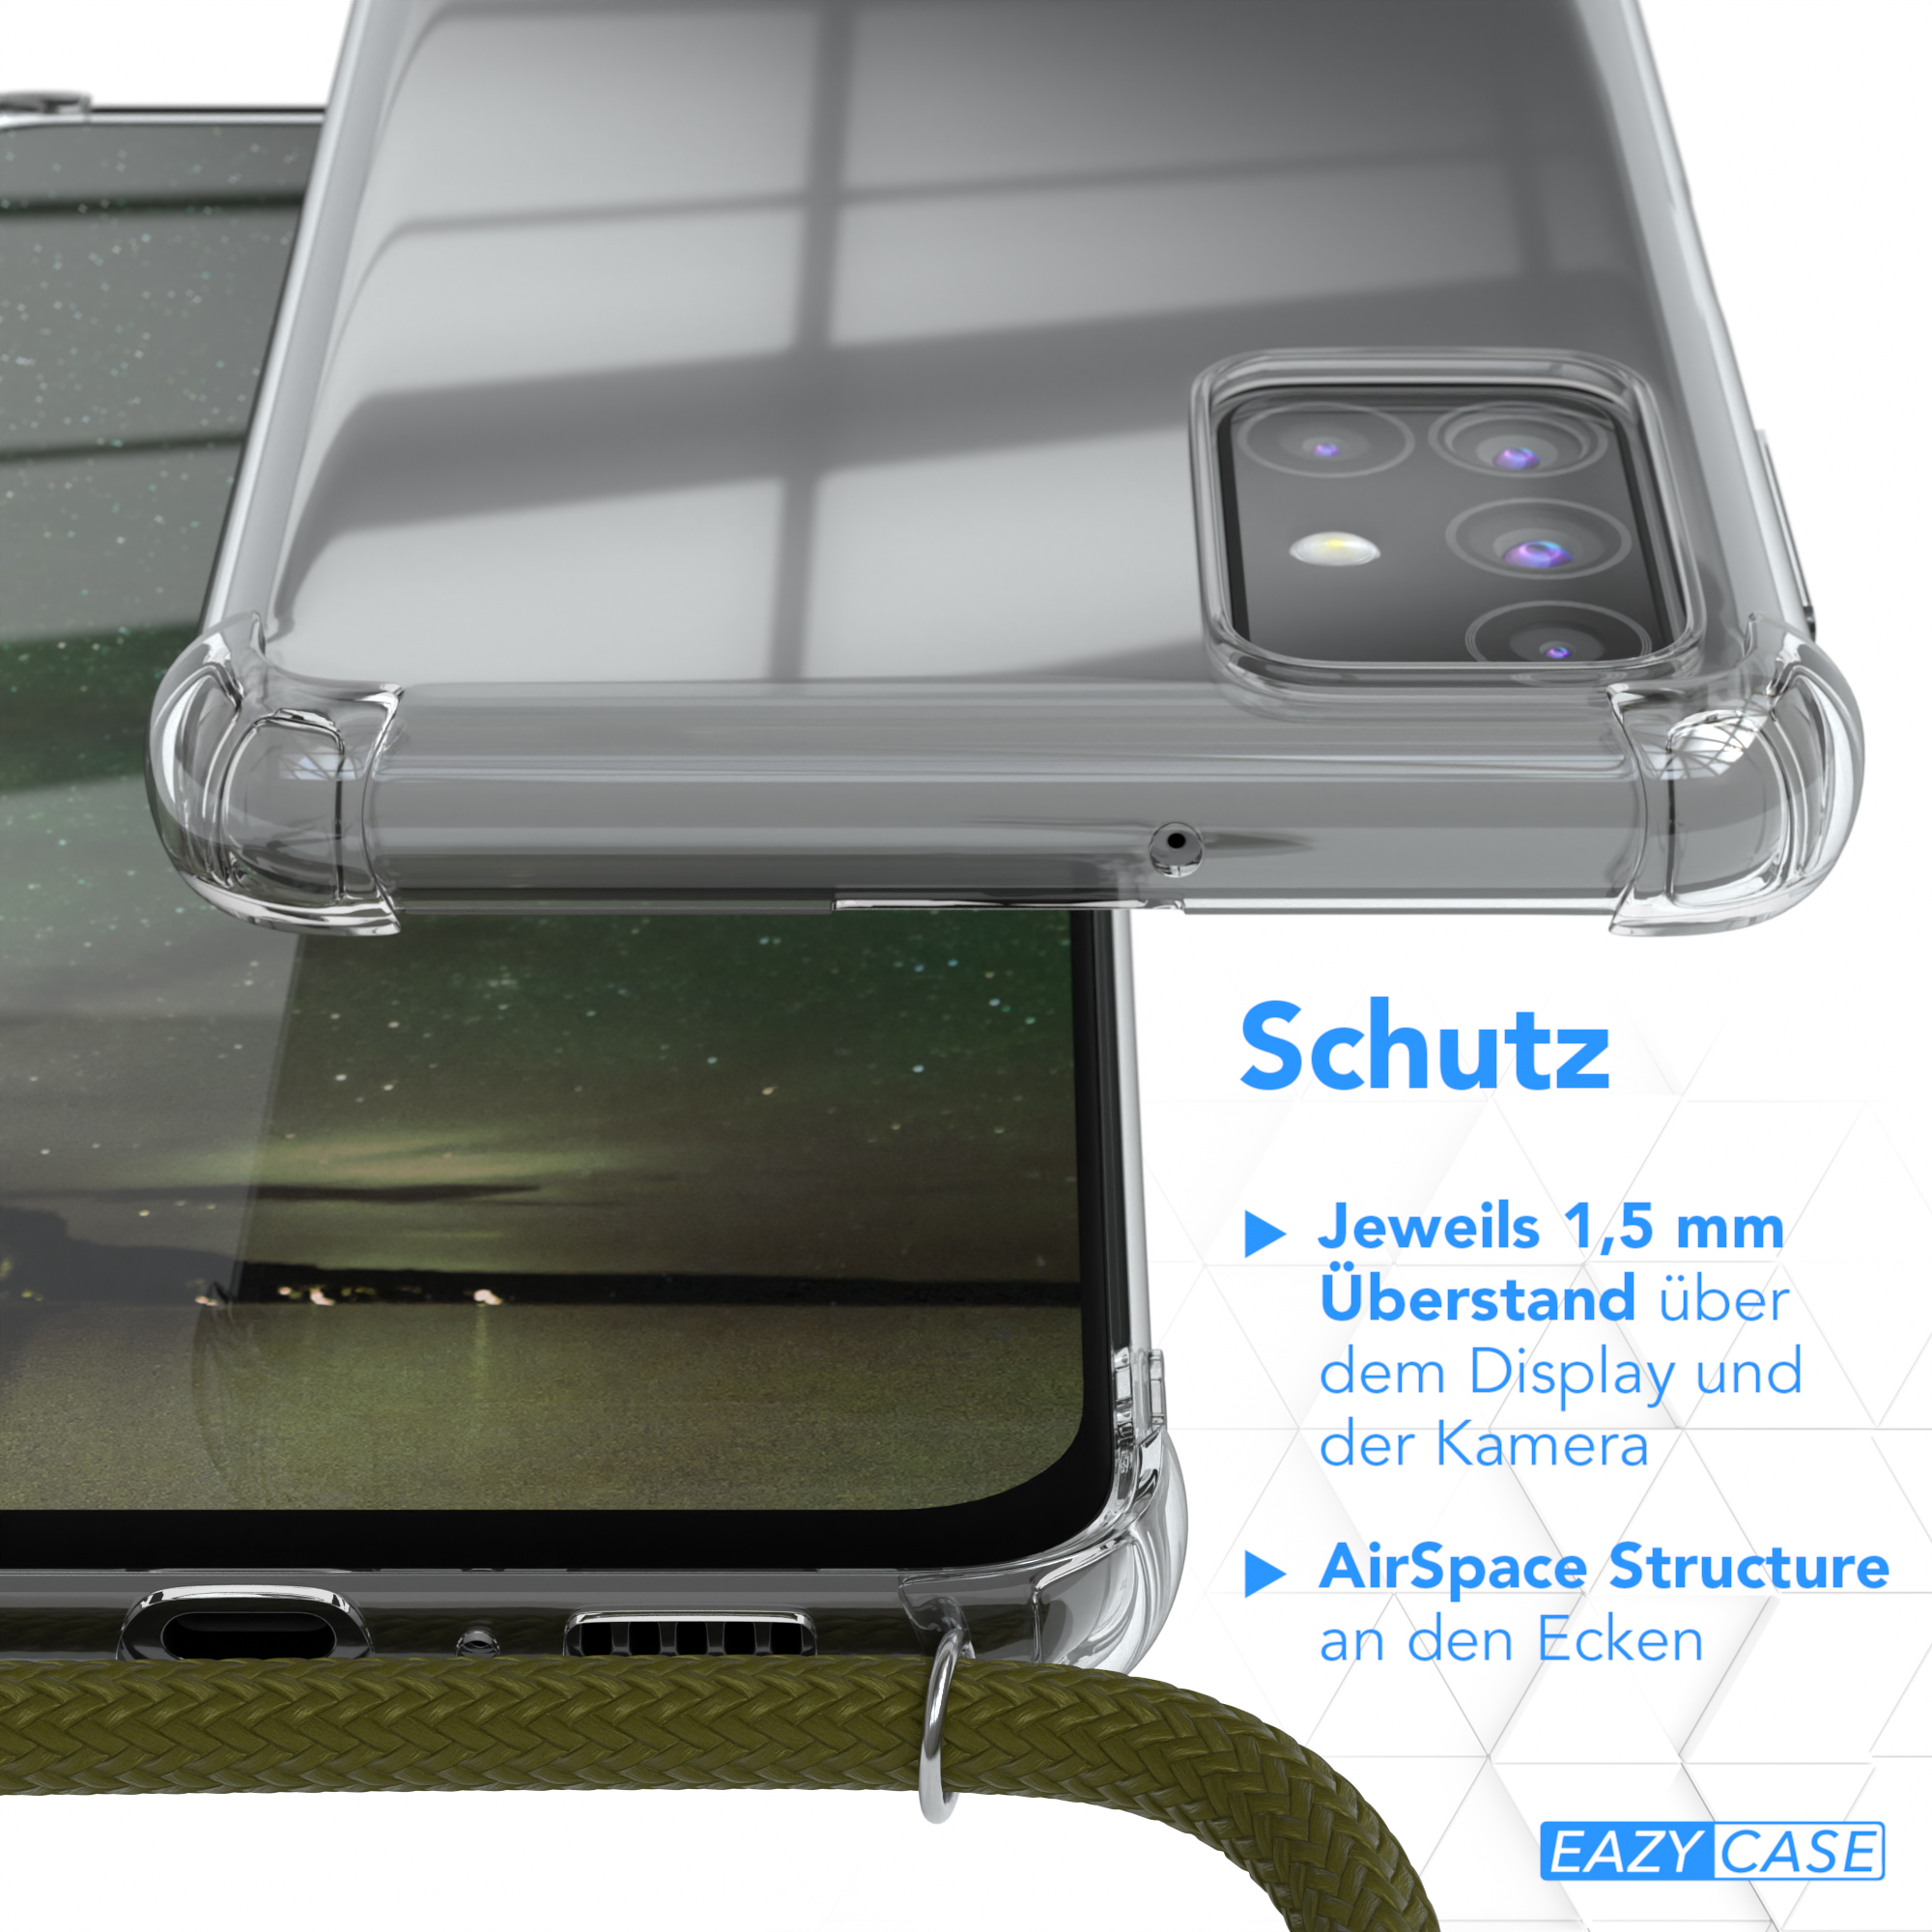 Samsung, Clear mit M31s, CASE Umhängetasche, EAZY Cover Umhängeband, Galaxy Grün Olive